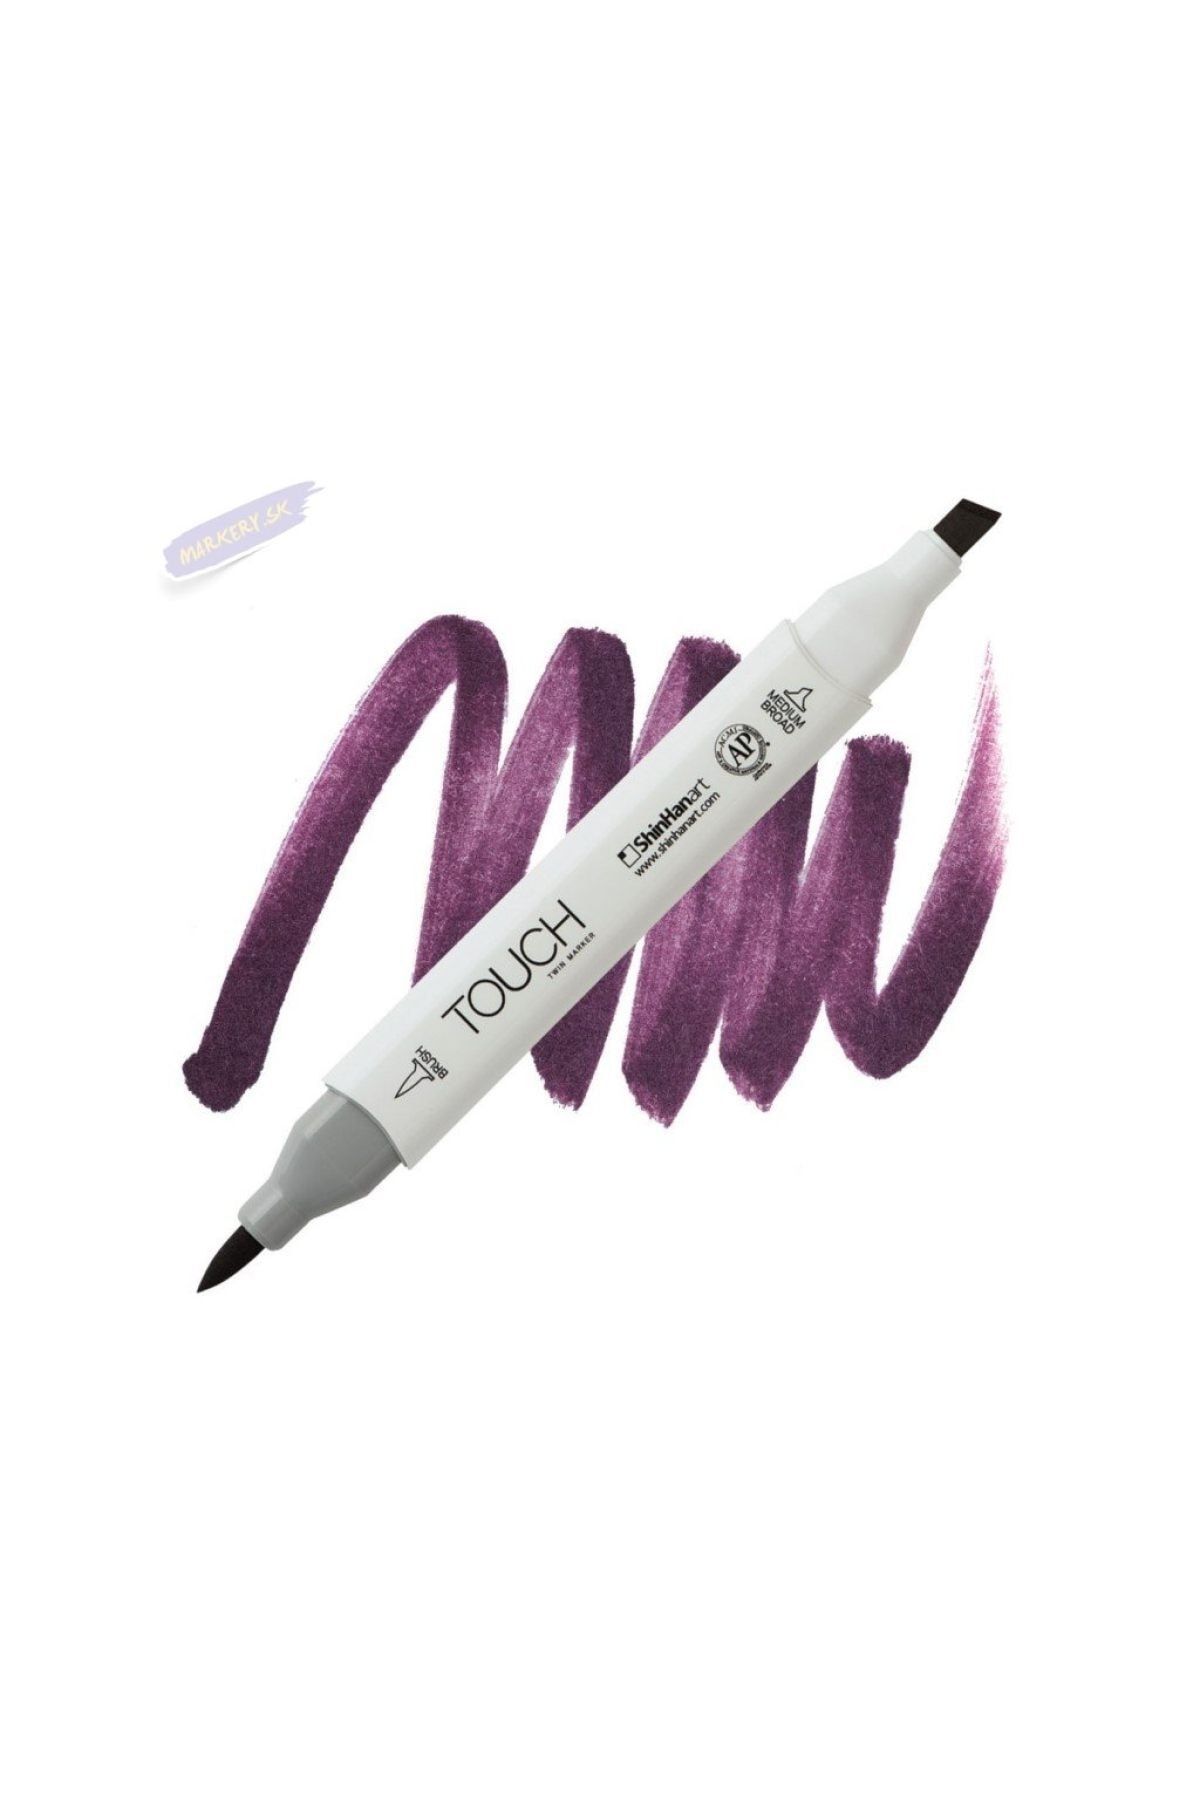 Shinhan Art Touch Twın Brush Pen : Çift Taraflı Marker : P283 Purple Deep